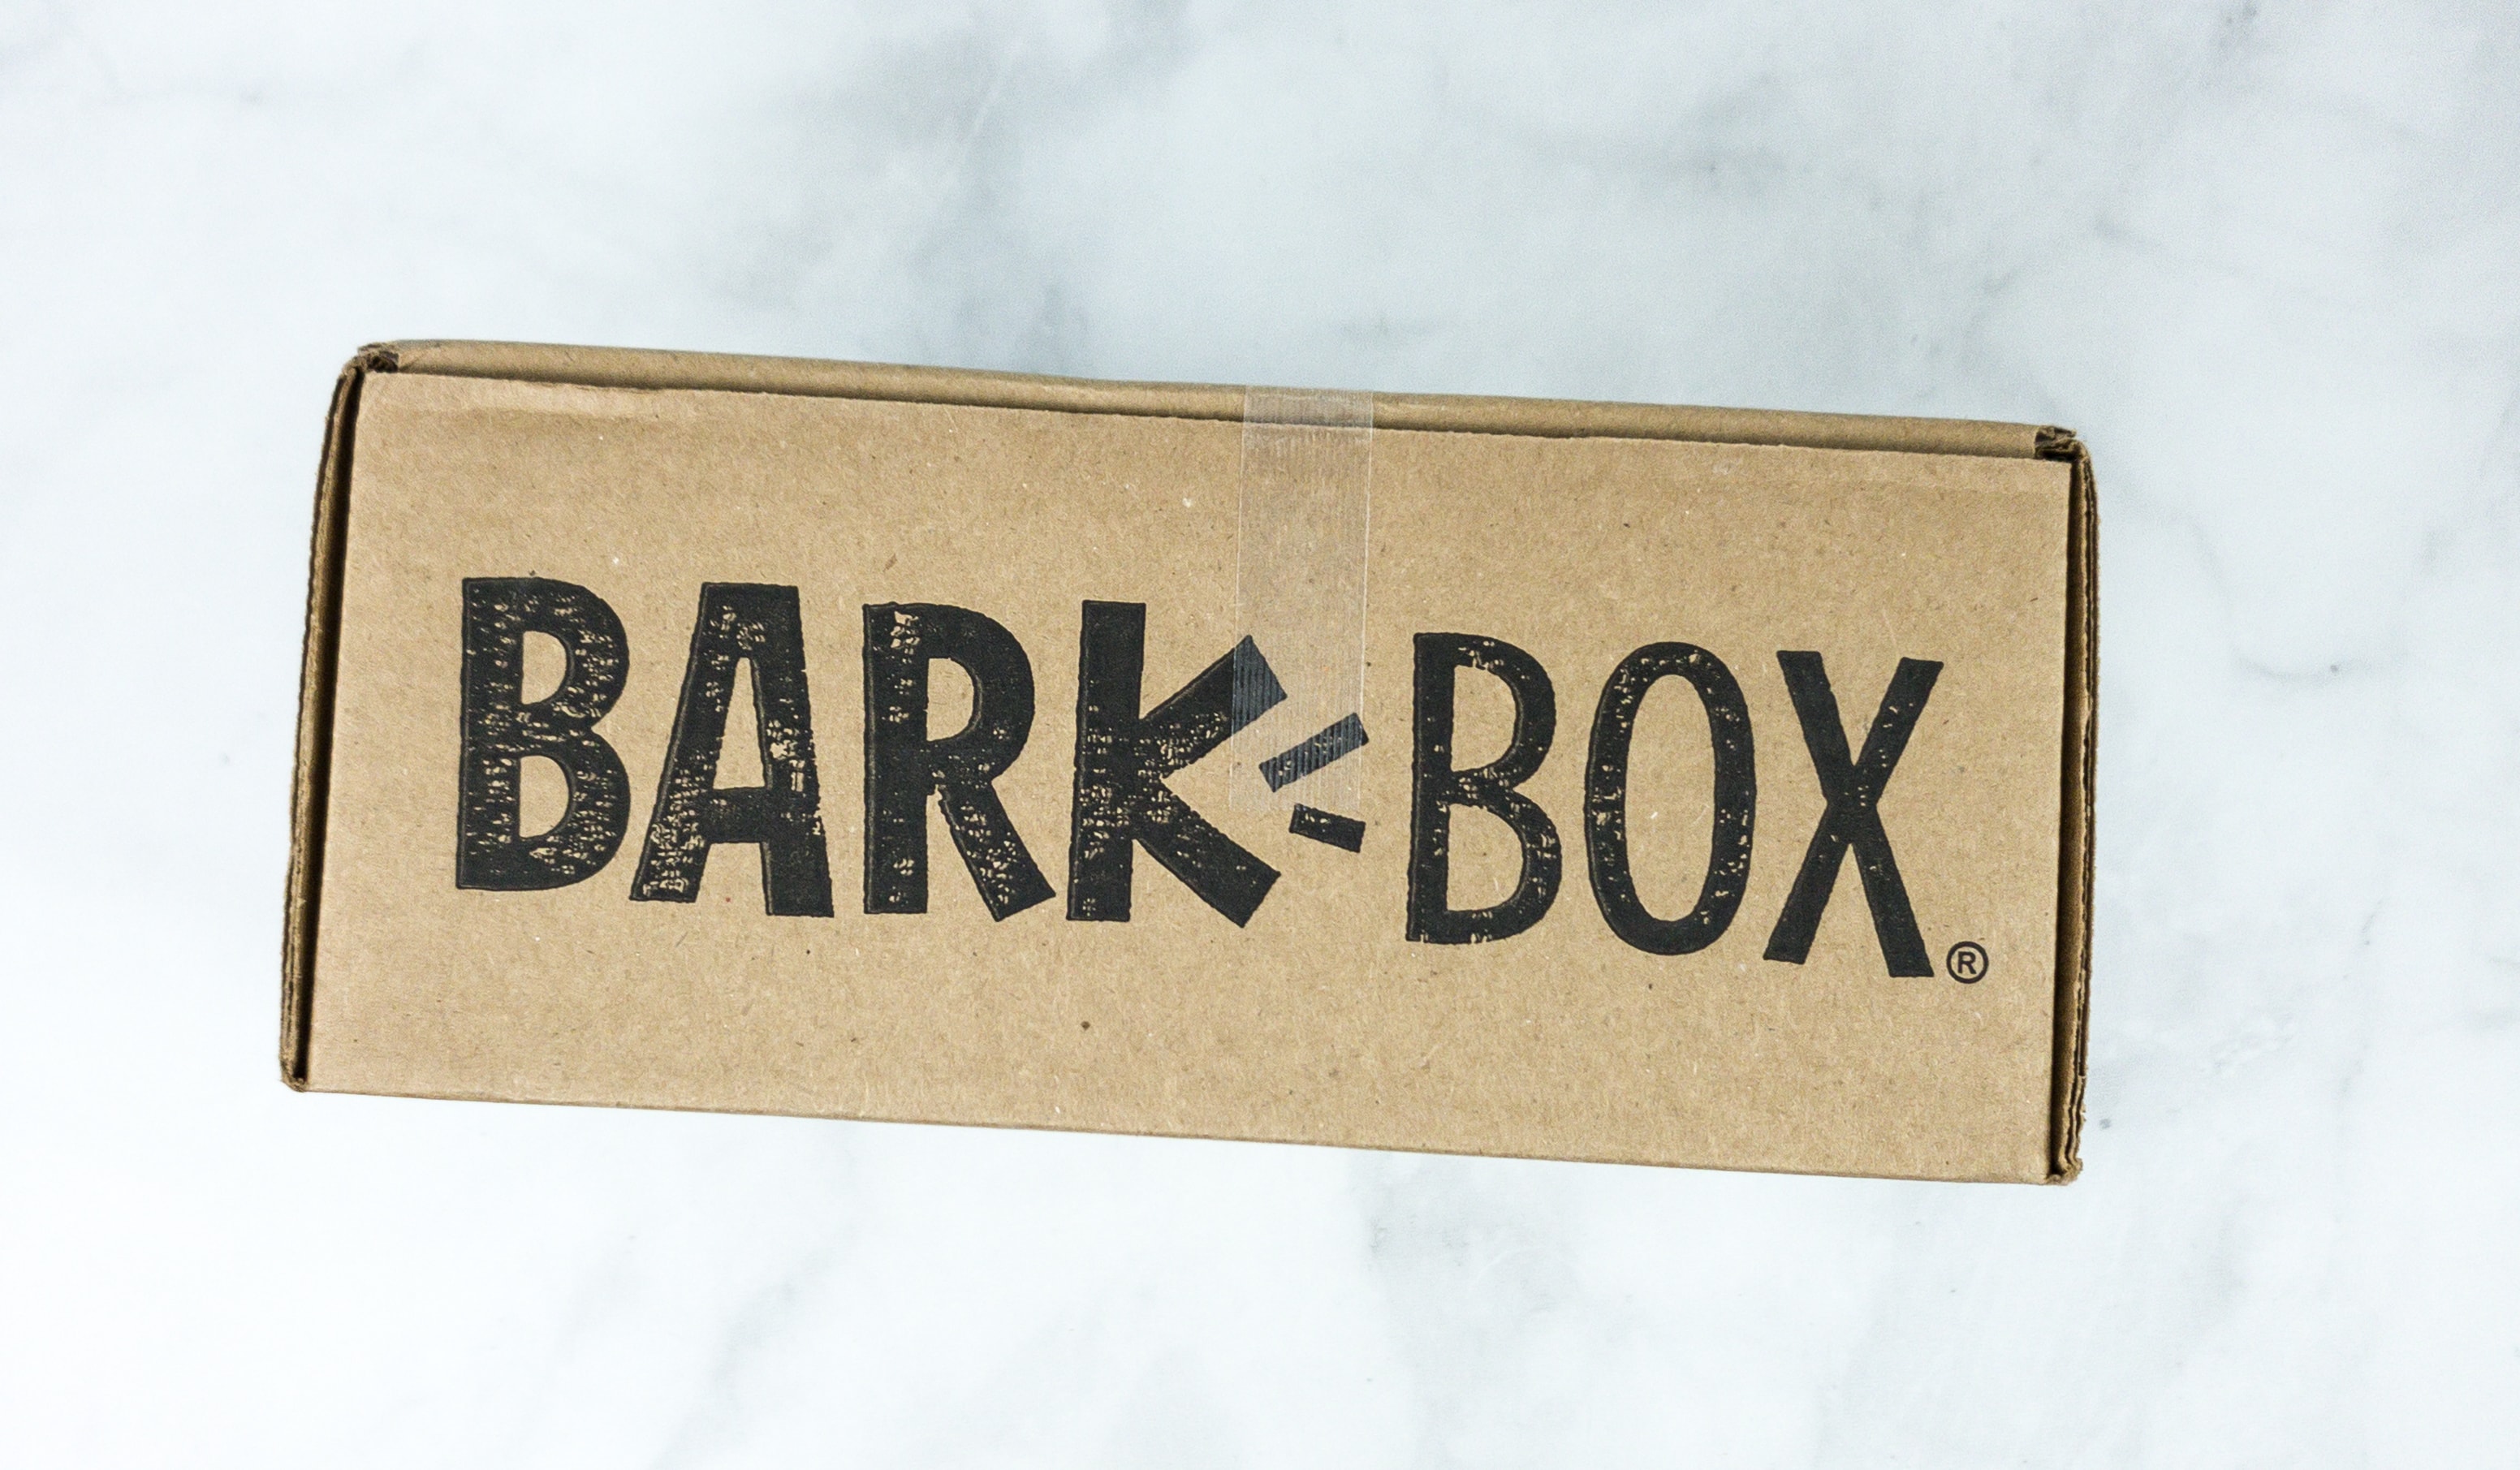 Barkbox May 2020 Subscription Box Review + Coupon Hello Subscription